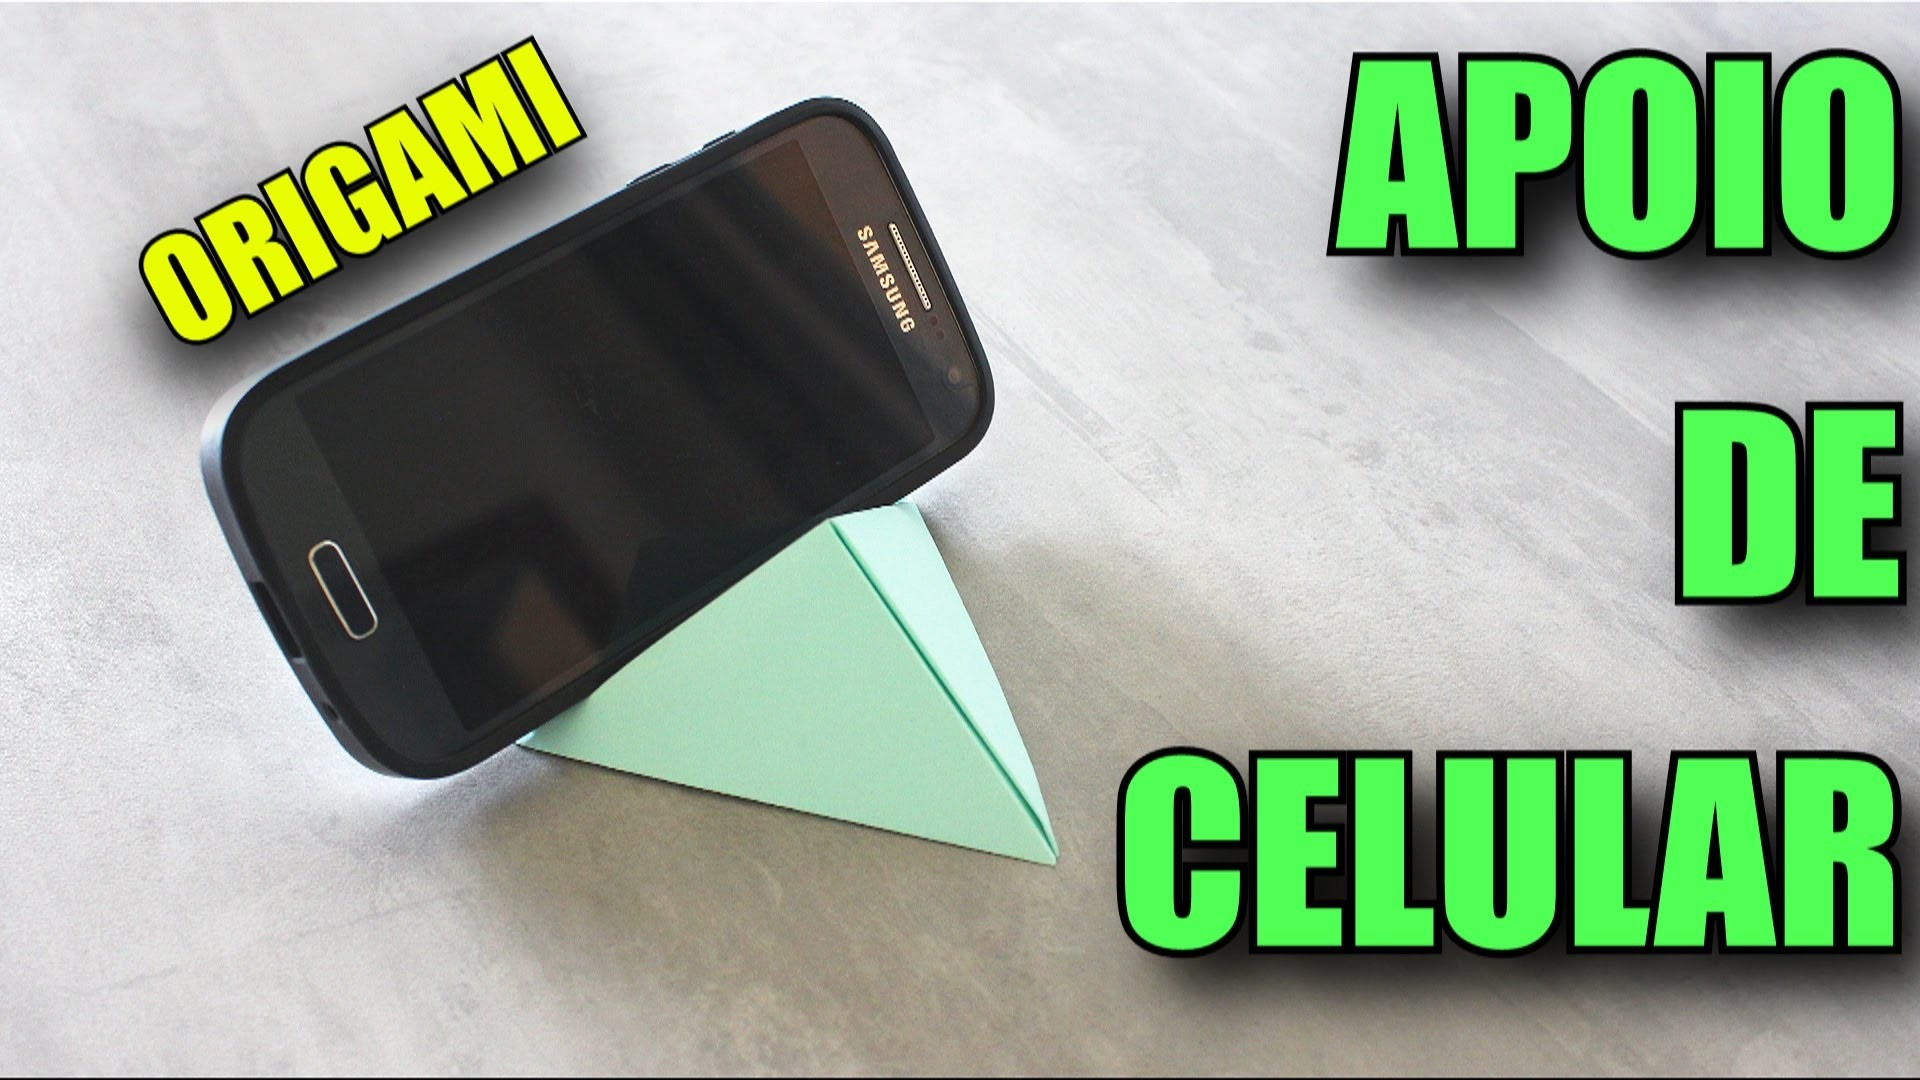 Apoio de Celular.Smartphone - Origami